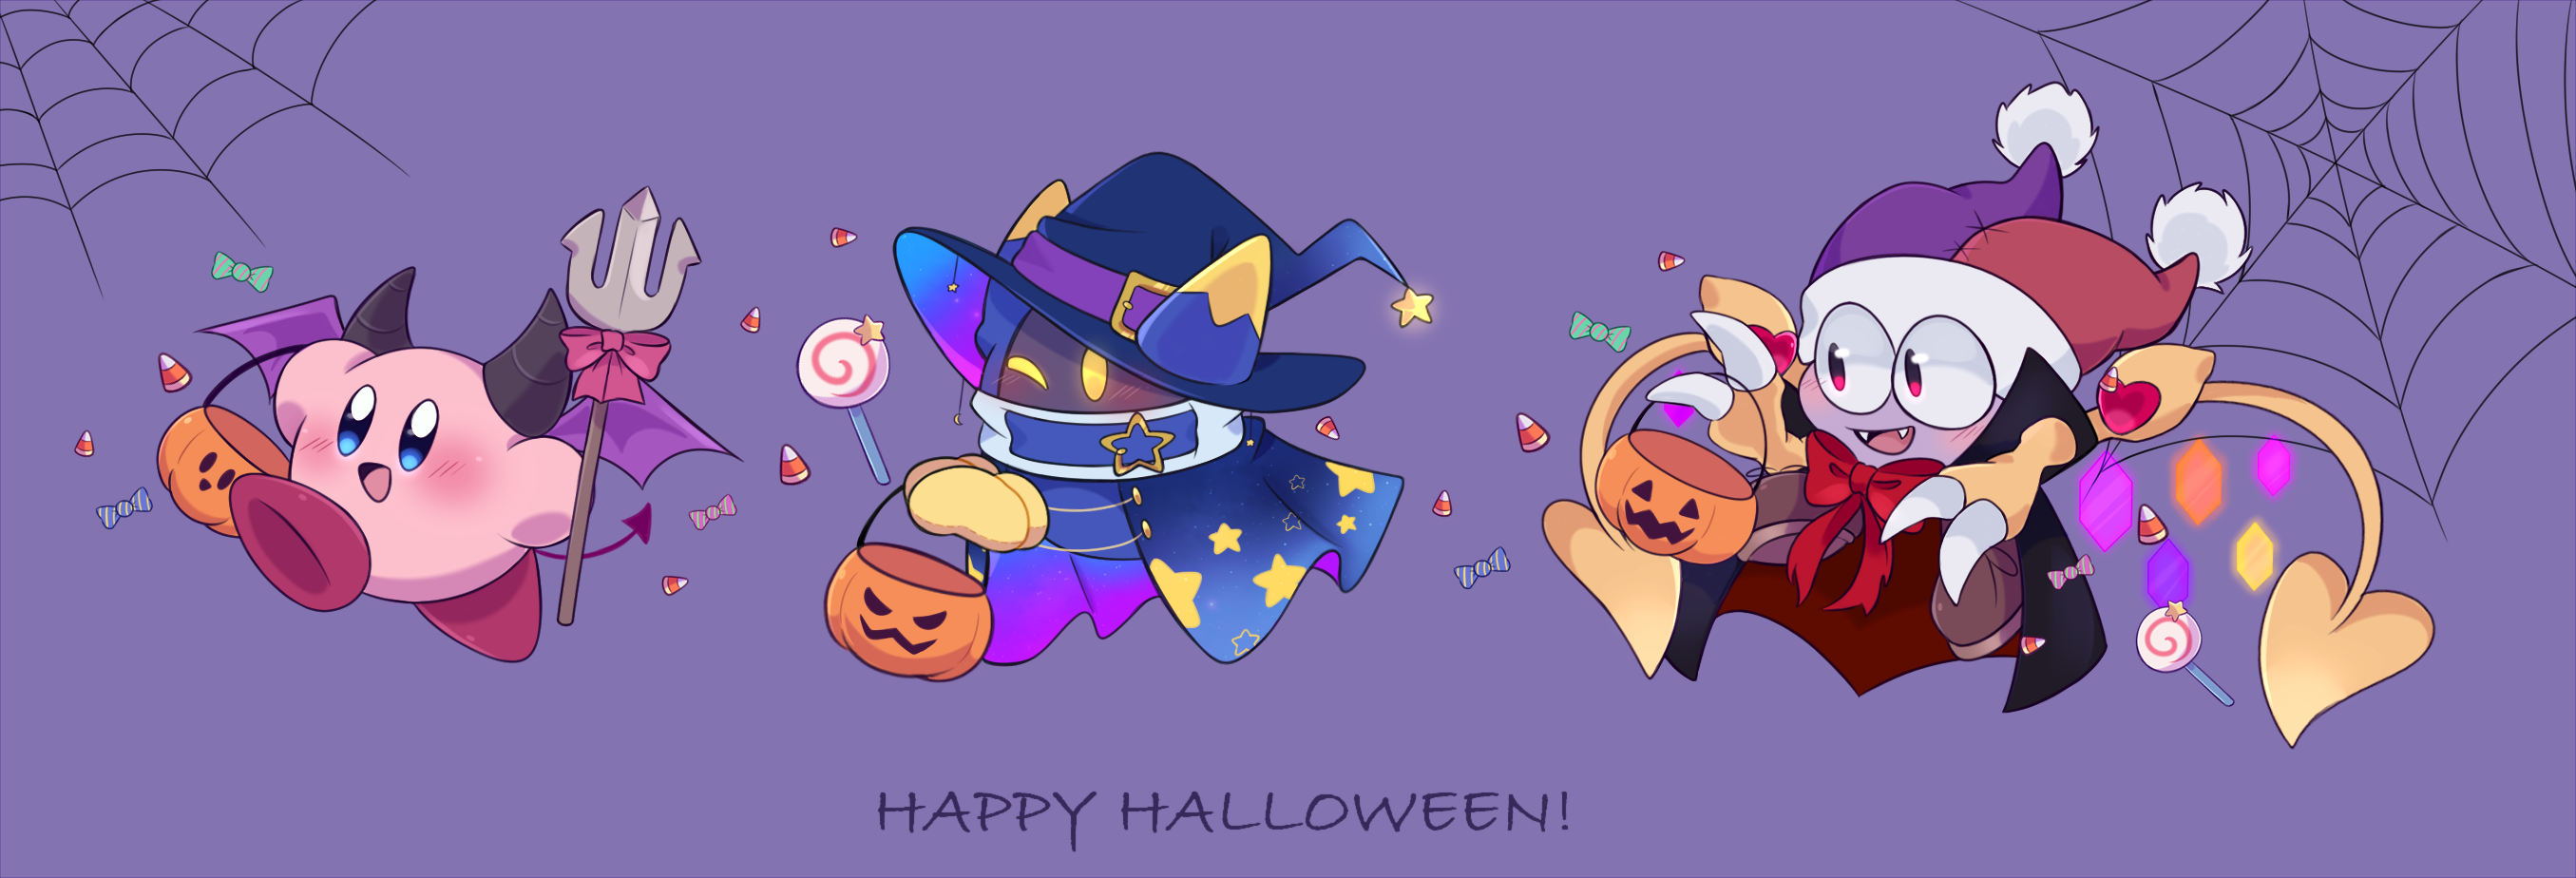 Happy Halloween - Kirby fanart by FafaMeow on DeviantArt